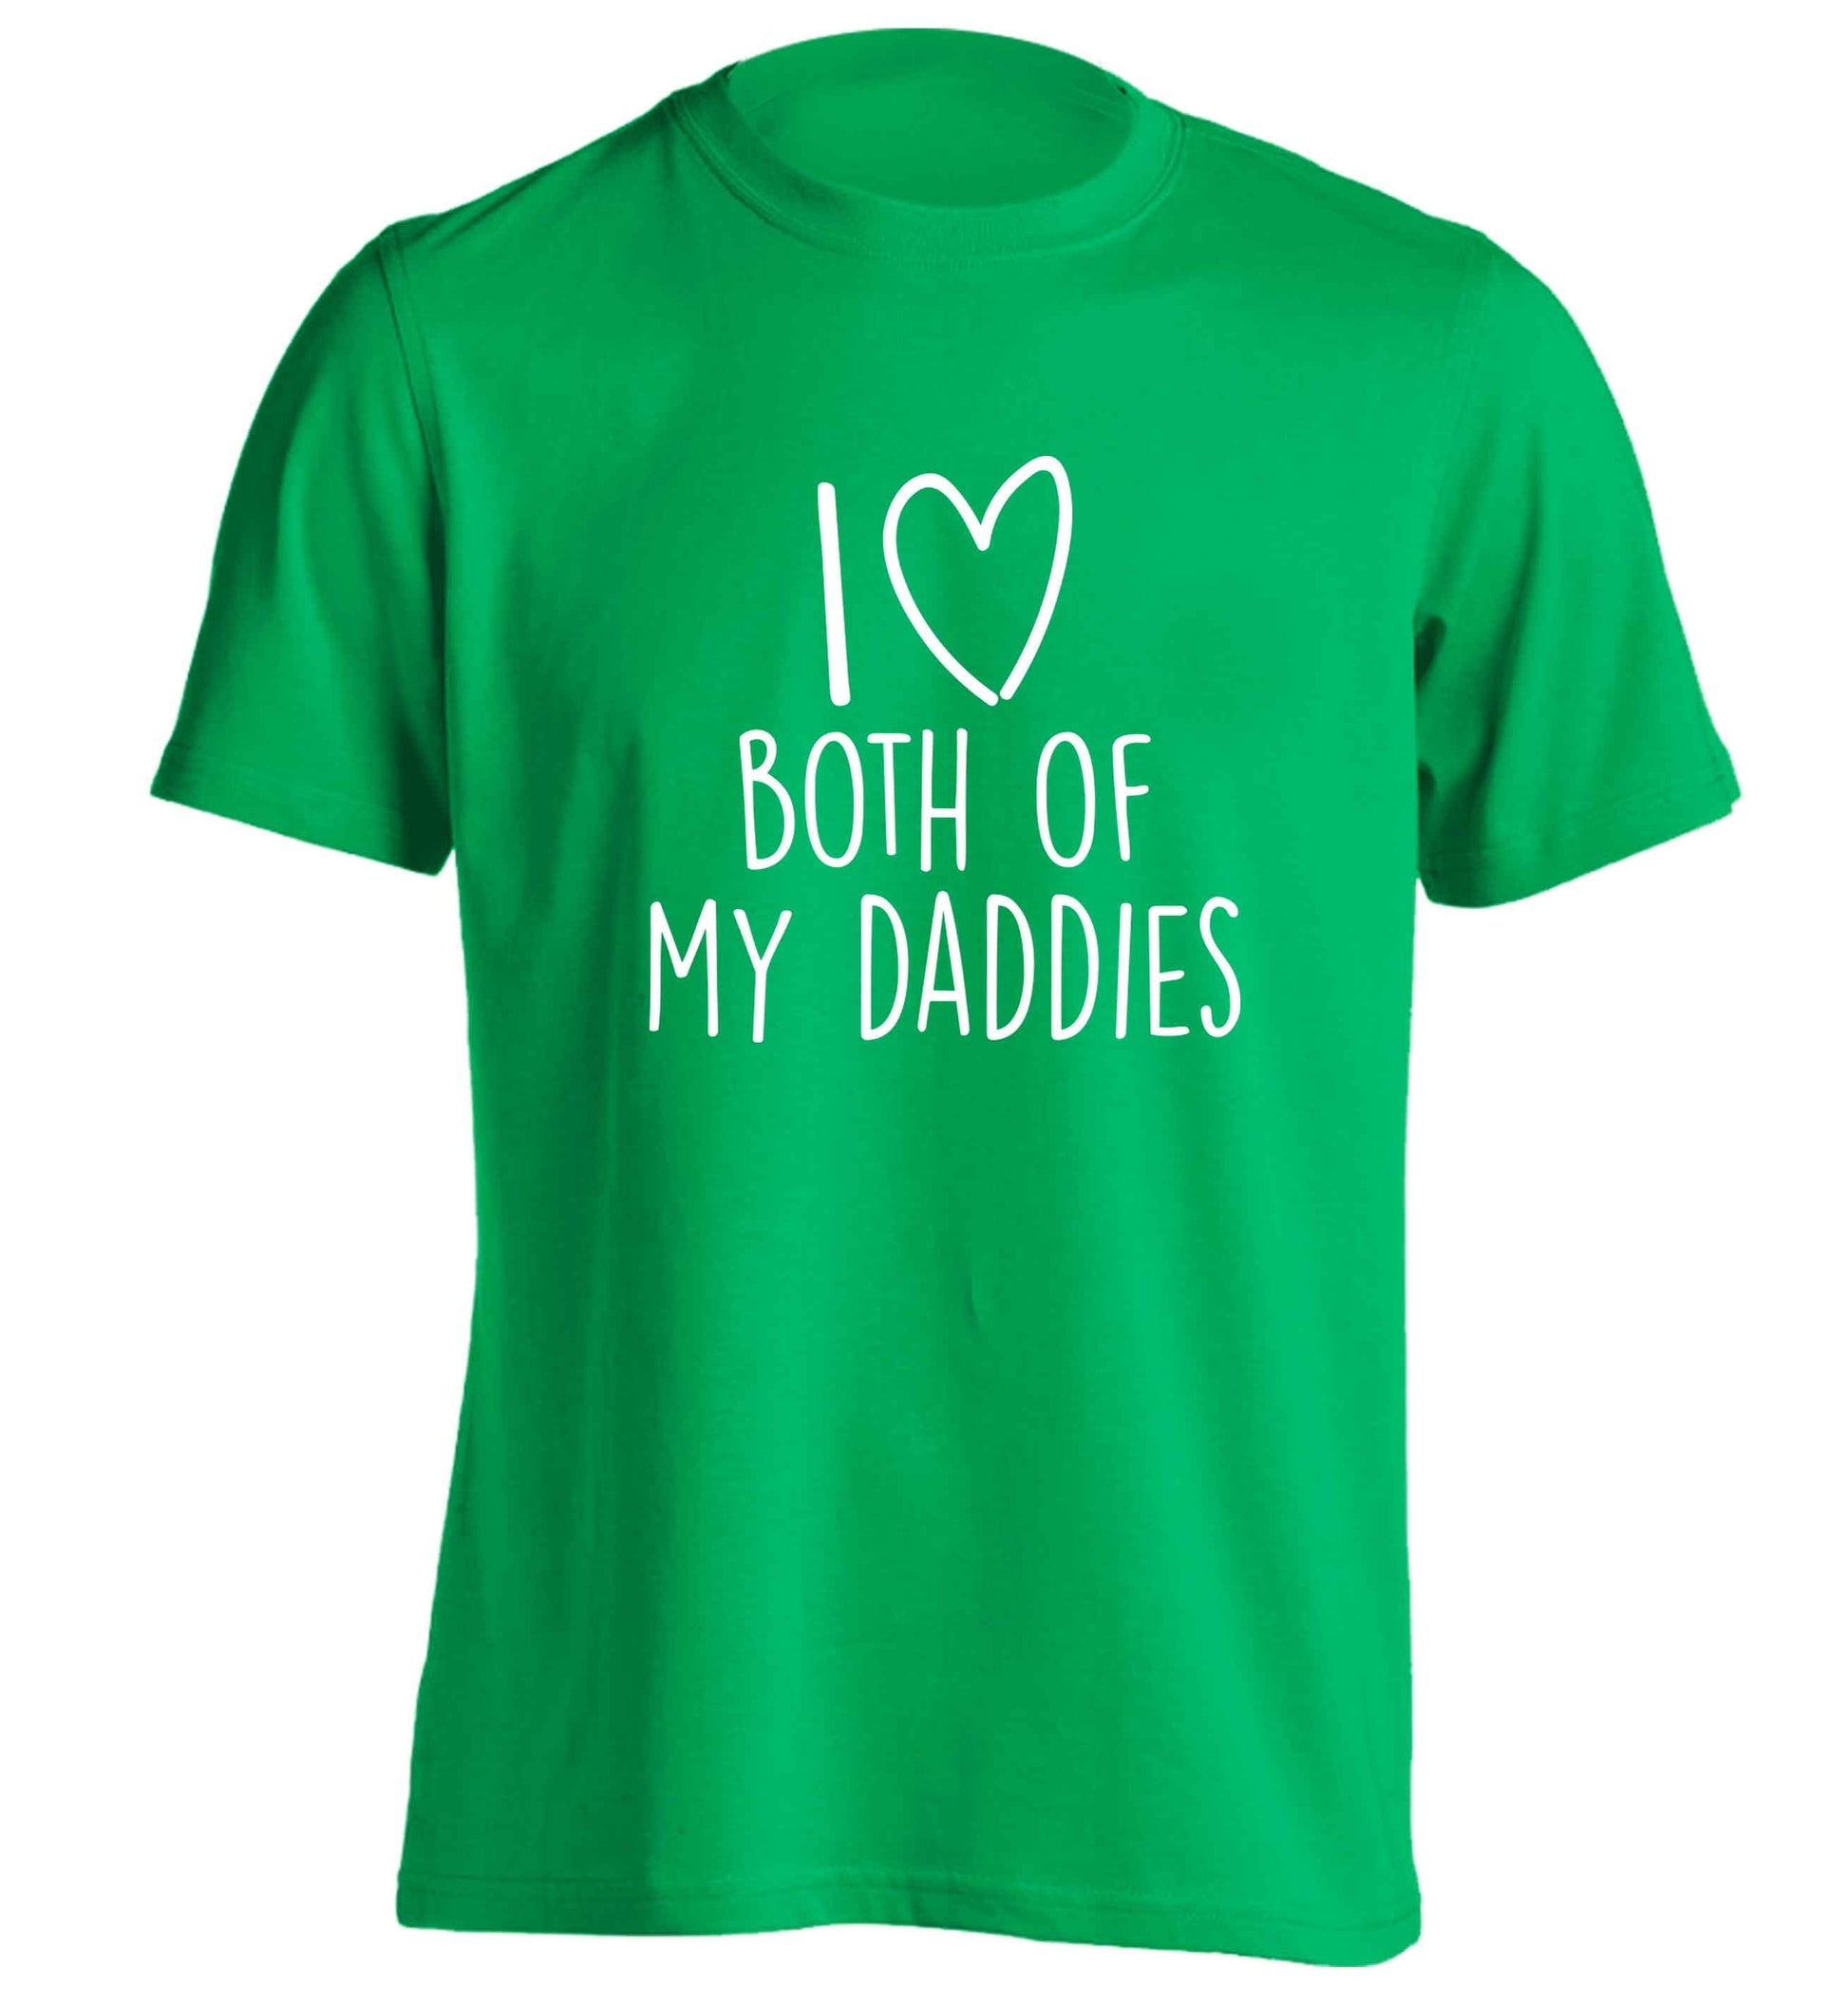 I love both of my daddies adults unisex green Tshirt 2XL